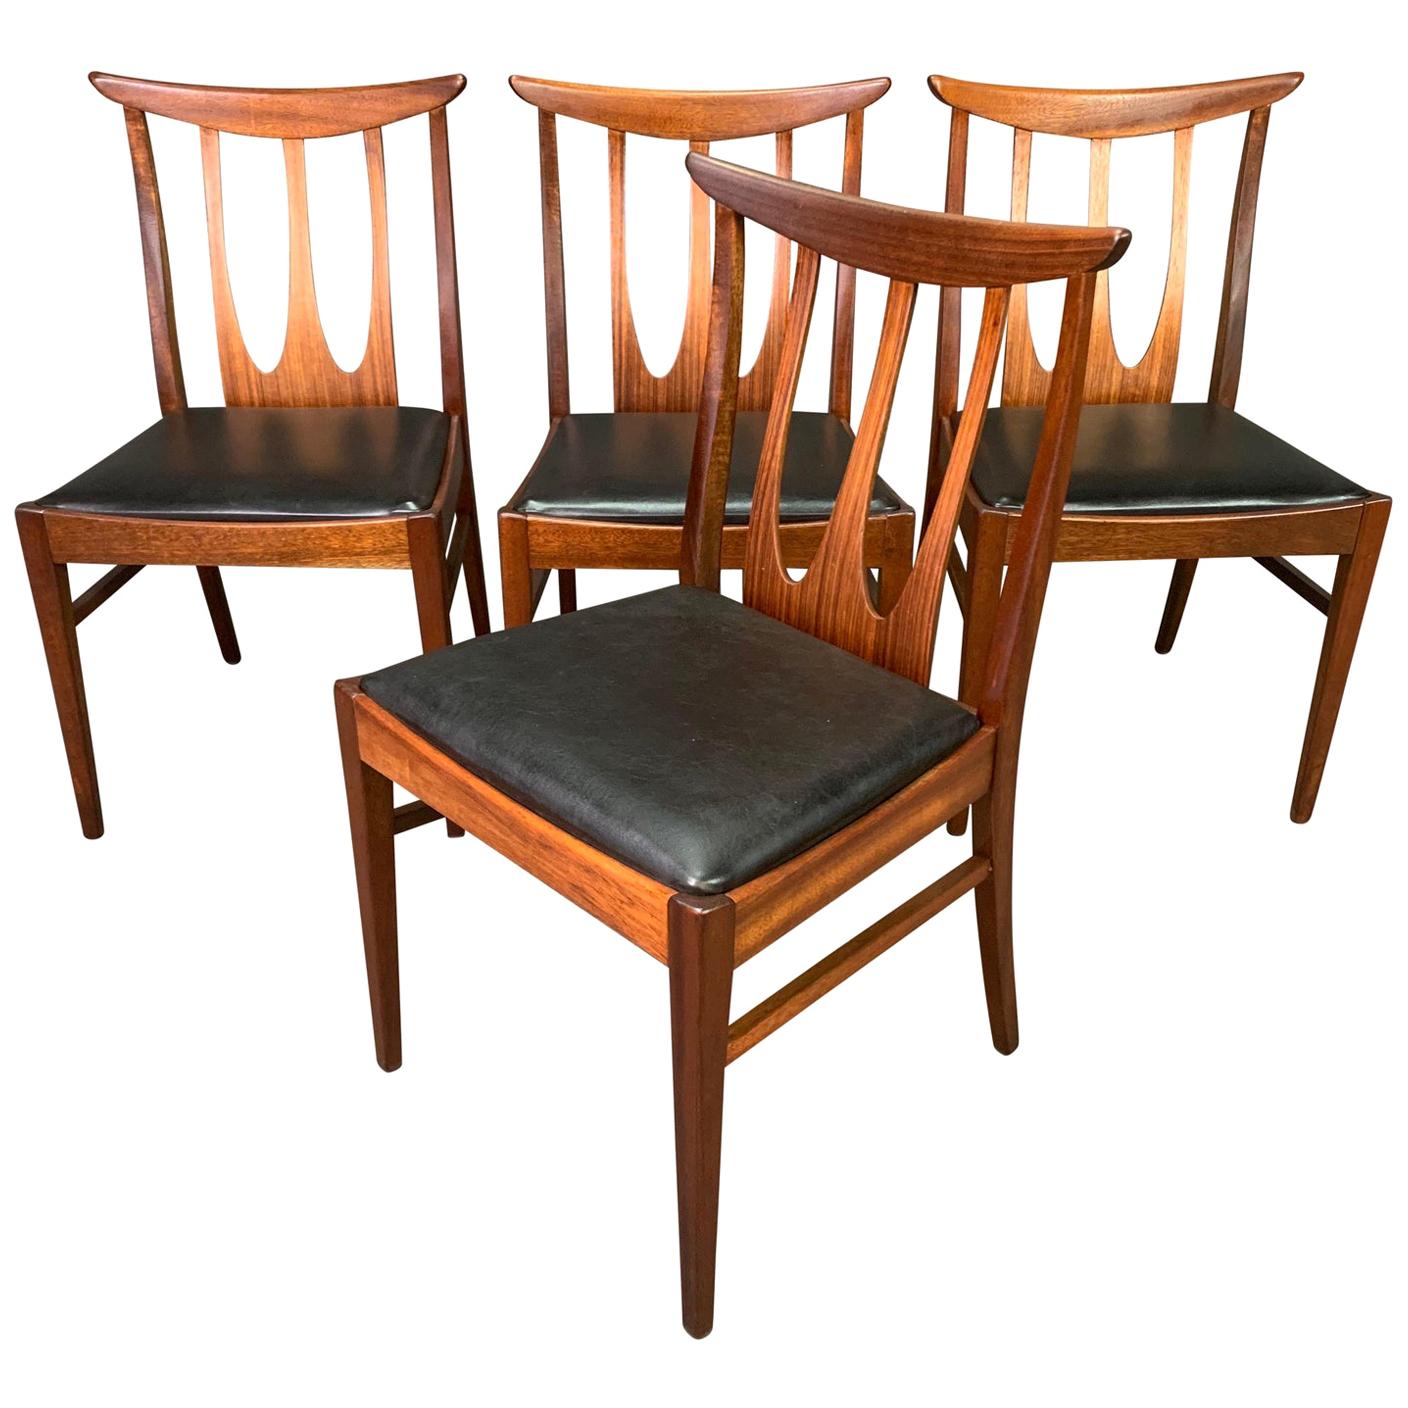 Set of Four Vintage British Midcentury Teak "Brasilia" Dining Chairs by G Plan